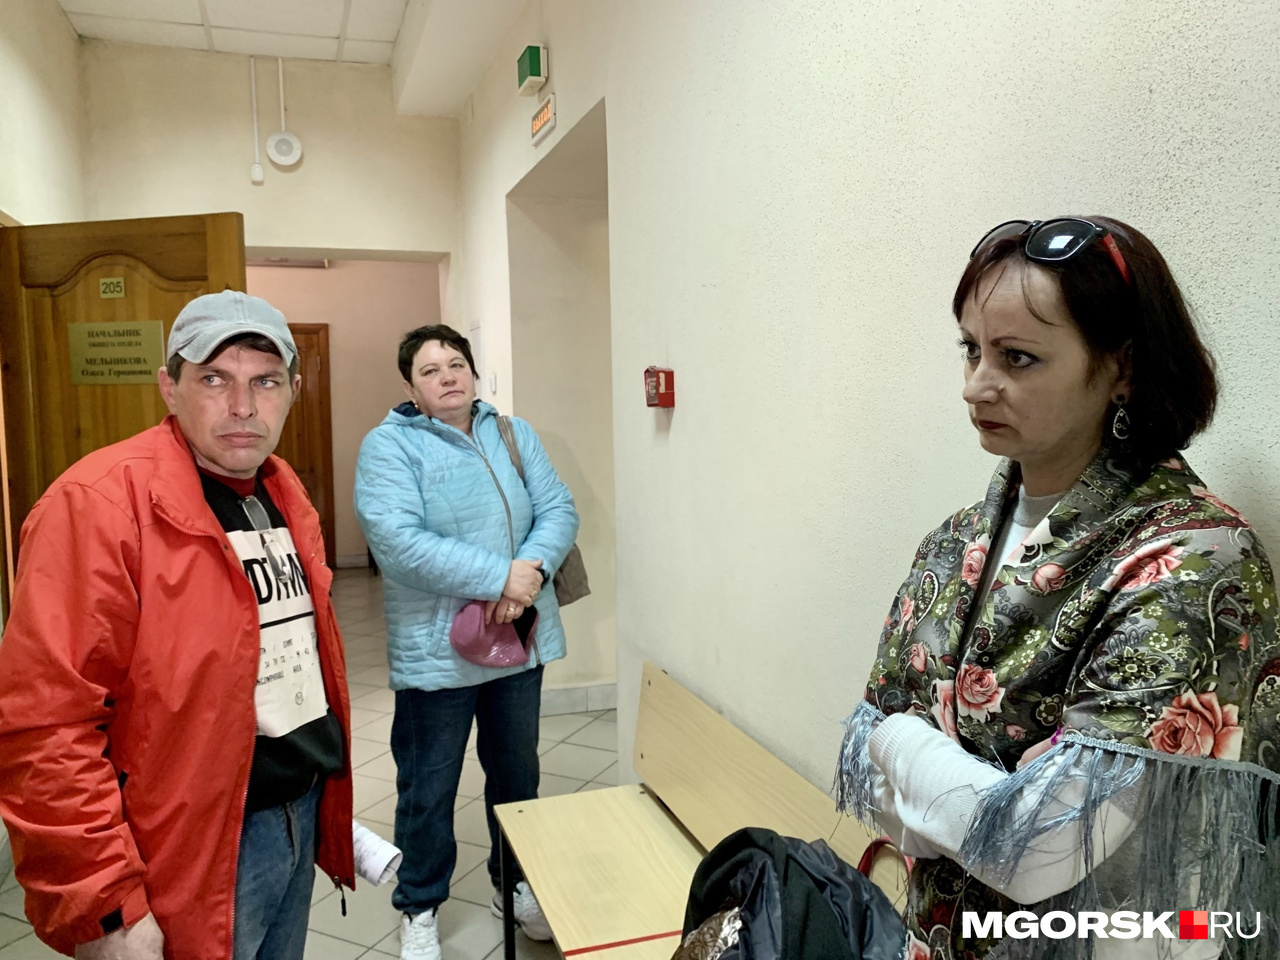 Кристина и Денис Плескачевы сказали, что не будут обжаловать приговор